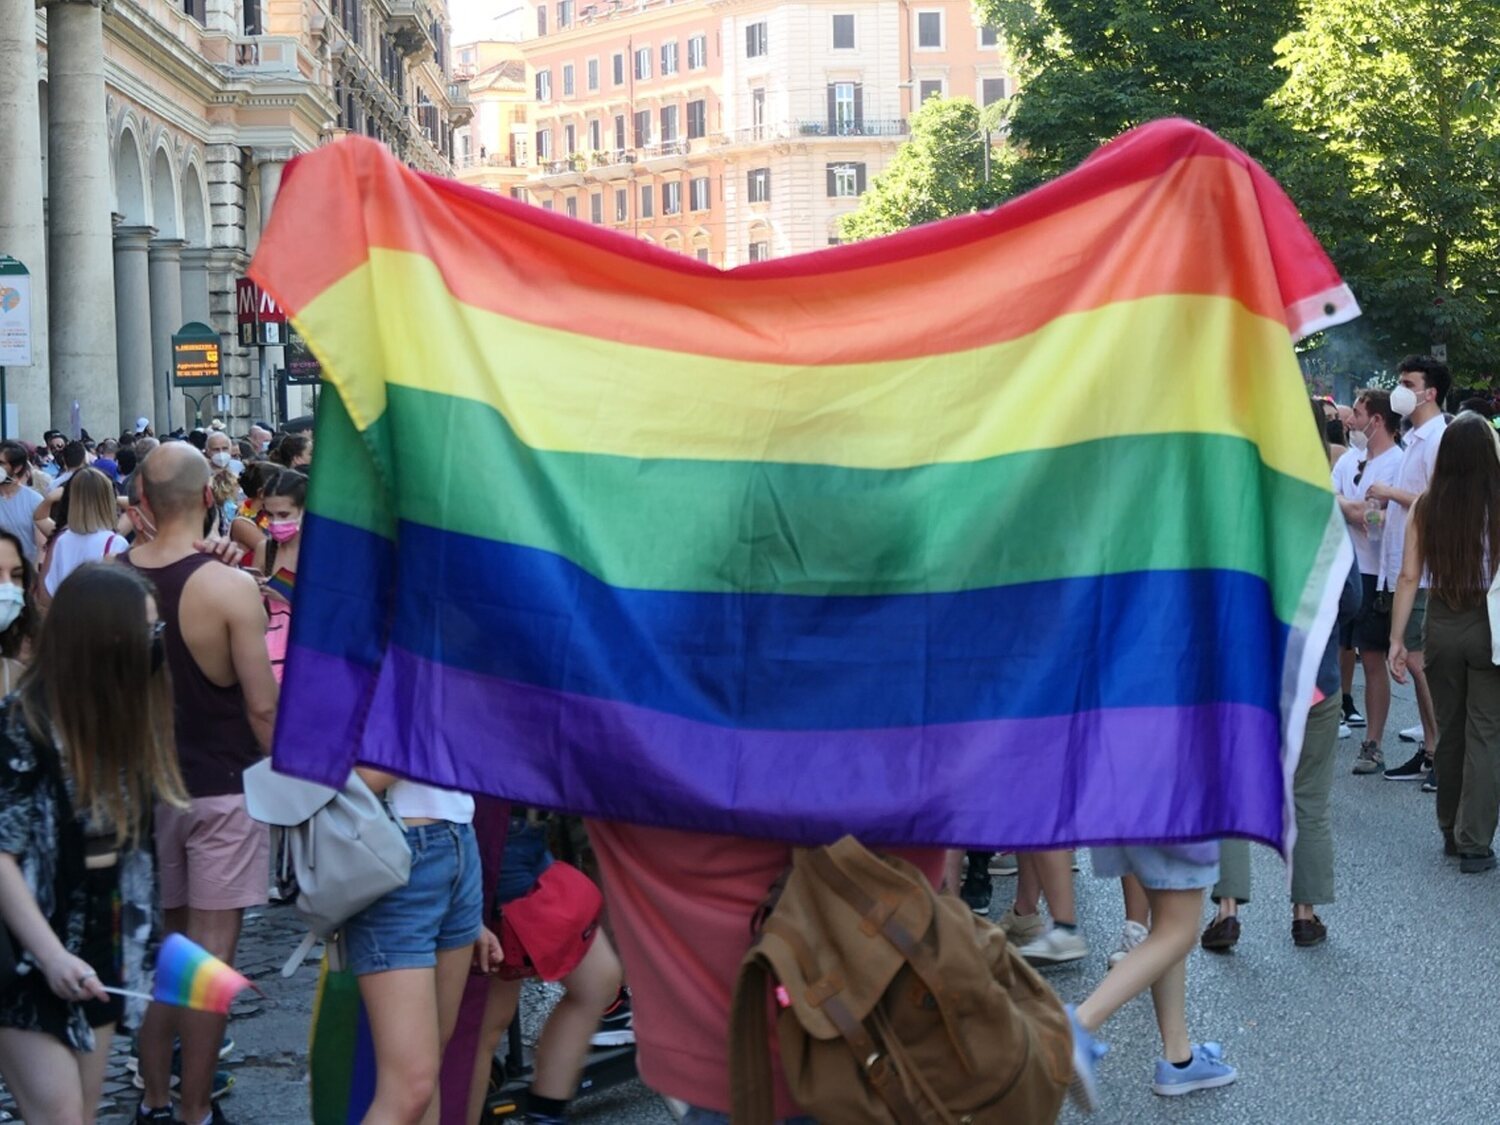 Agresión homófoba en Alicante: un menor golpea brutalmente a una pareja al grito de "maricón de mierda"